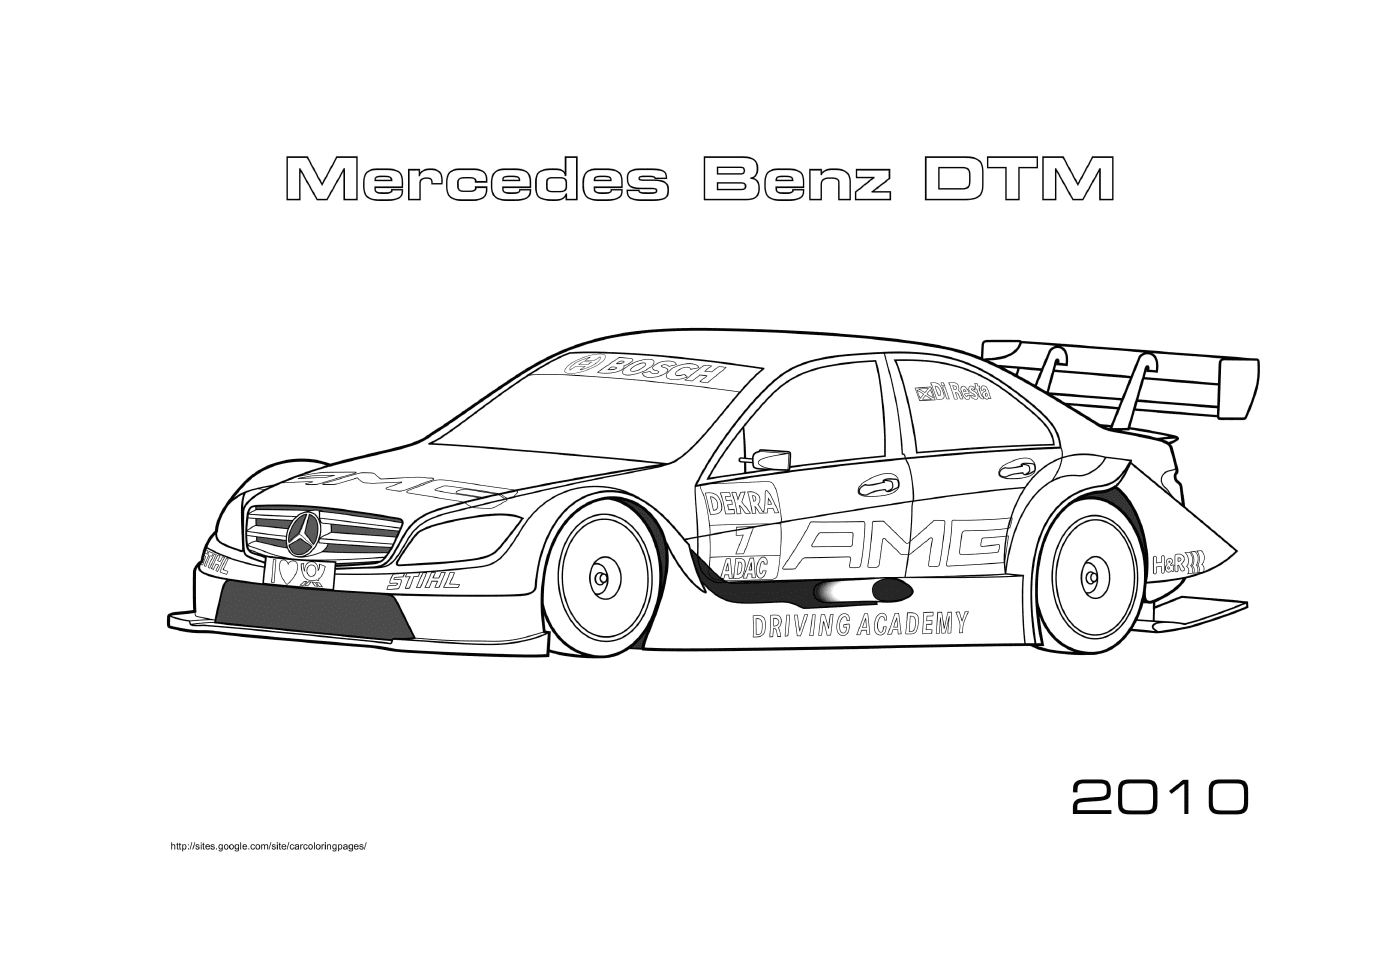   Mercedes Benz DTM 2010, voiture de course 